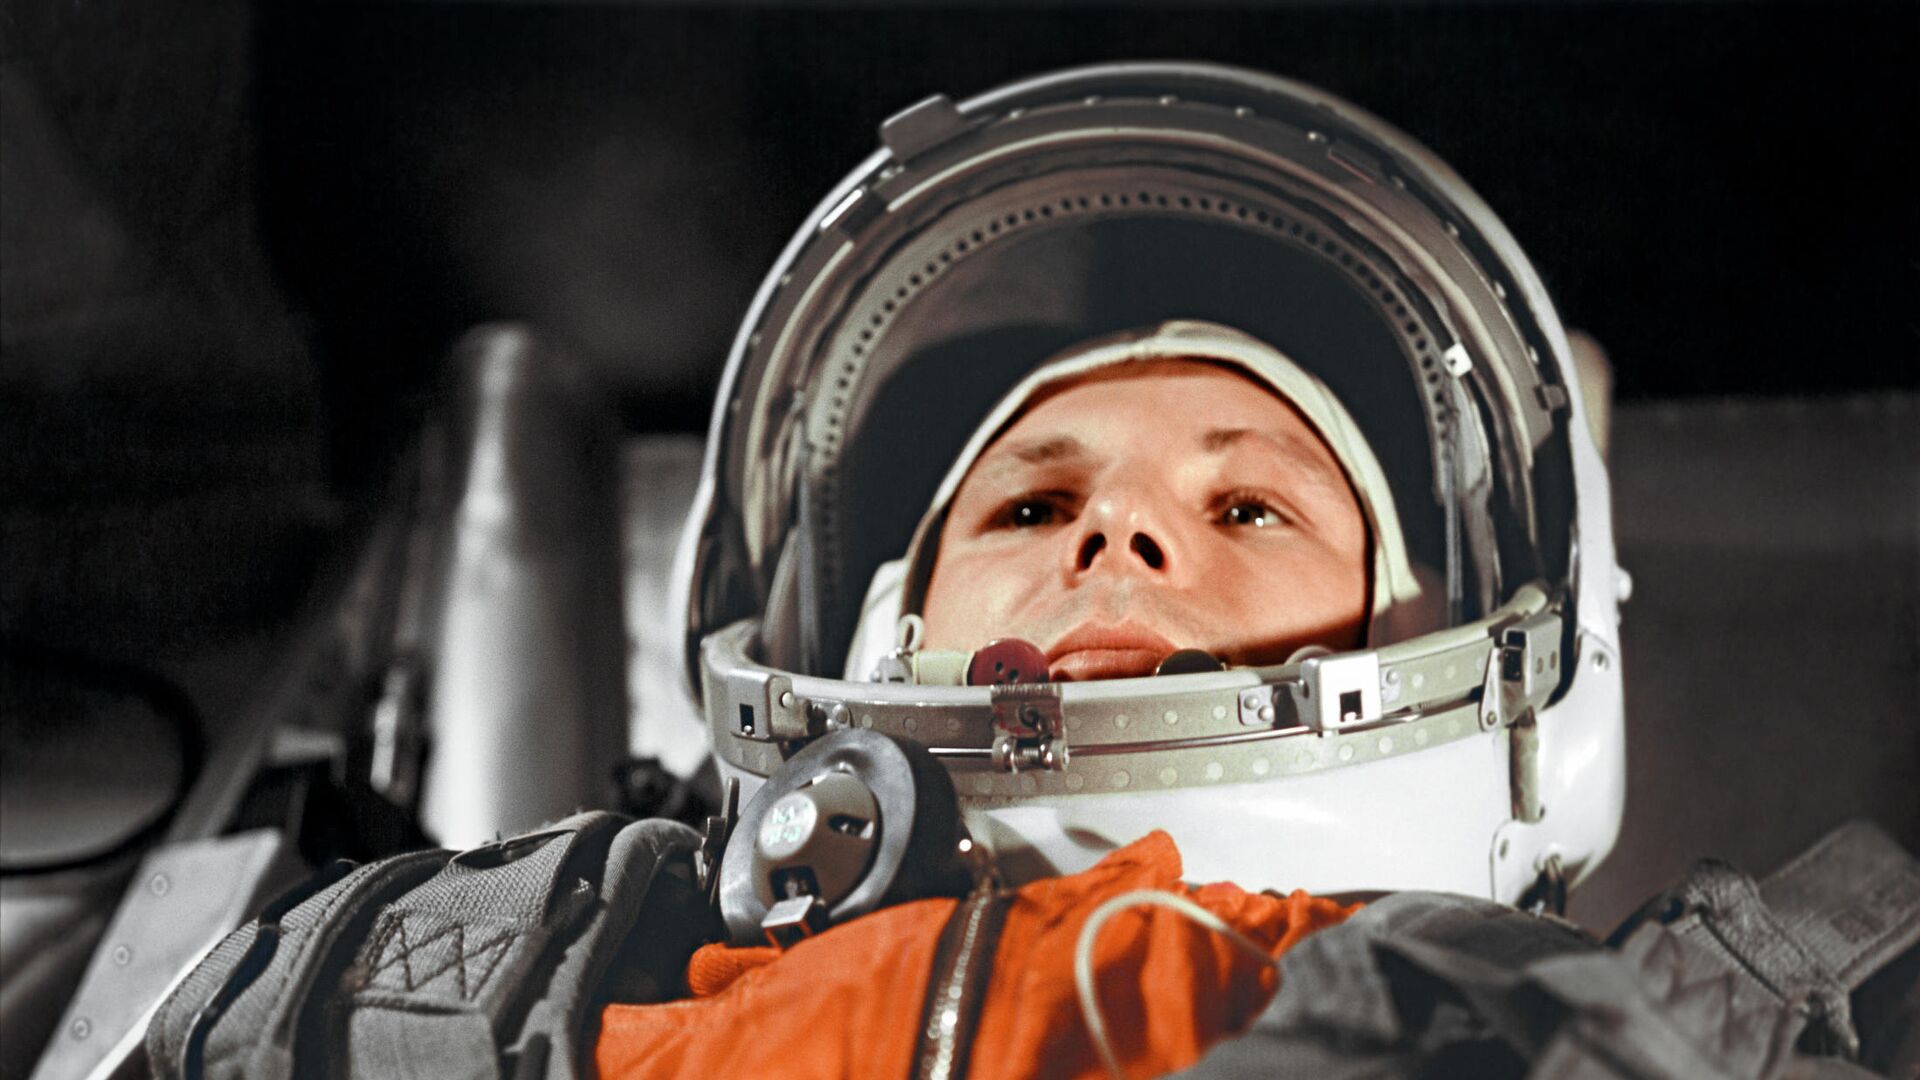 Юрий Гагарин в кабине космического корабля “Восток” перед полётом в космос 12 апреля 1961 года - РИА Новости, 1920, 12.04.2019